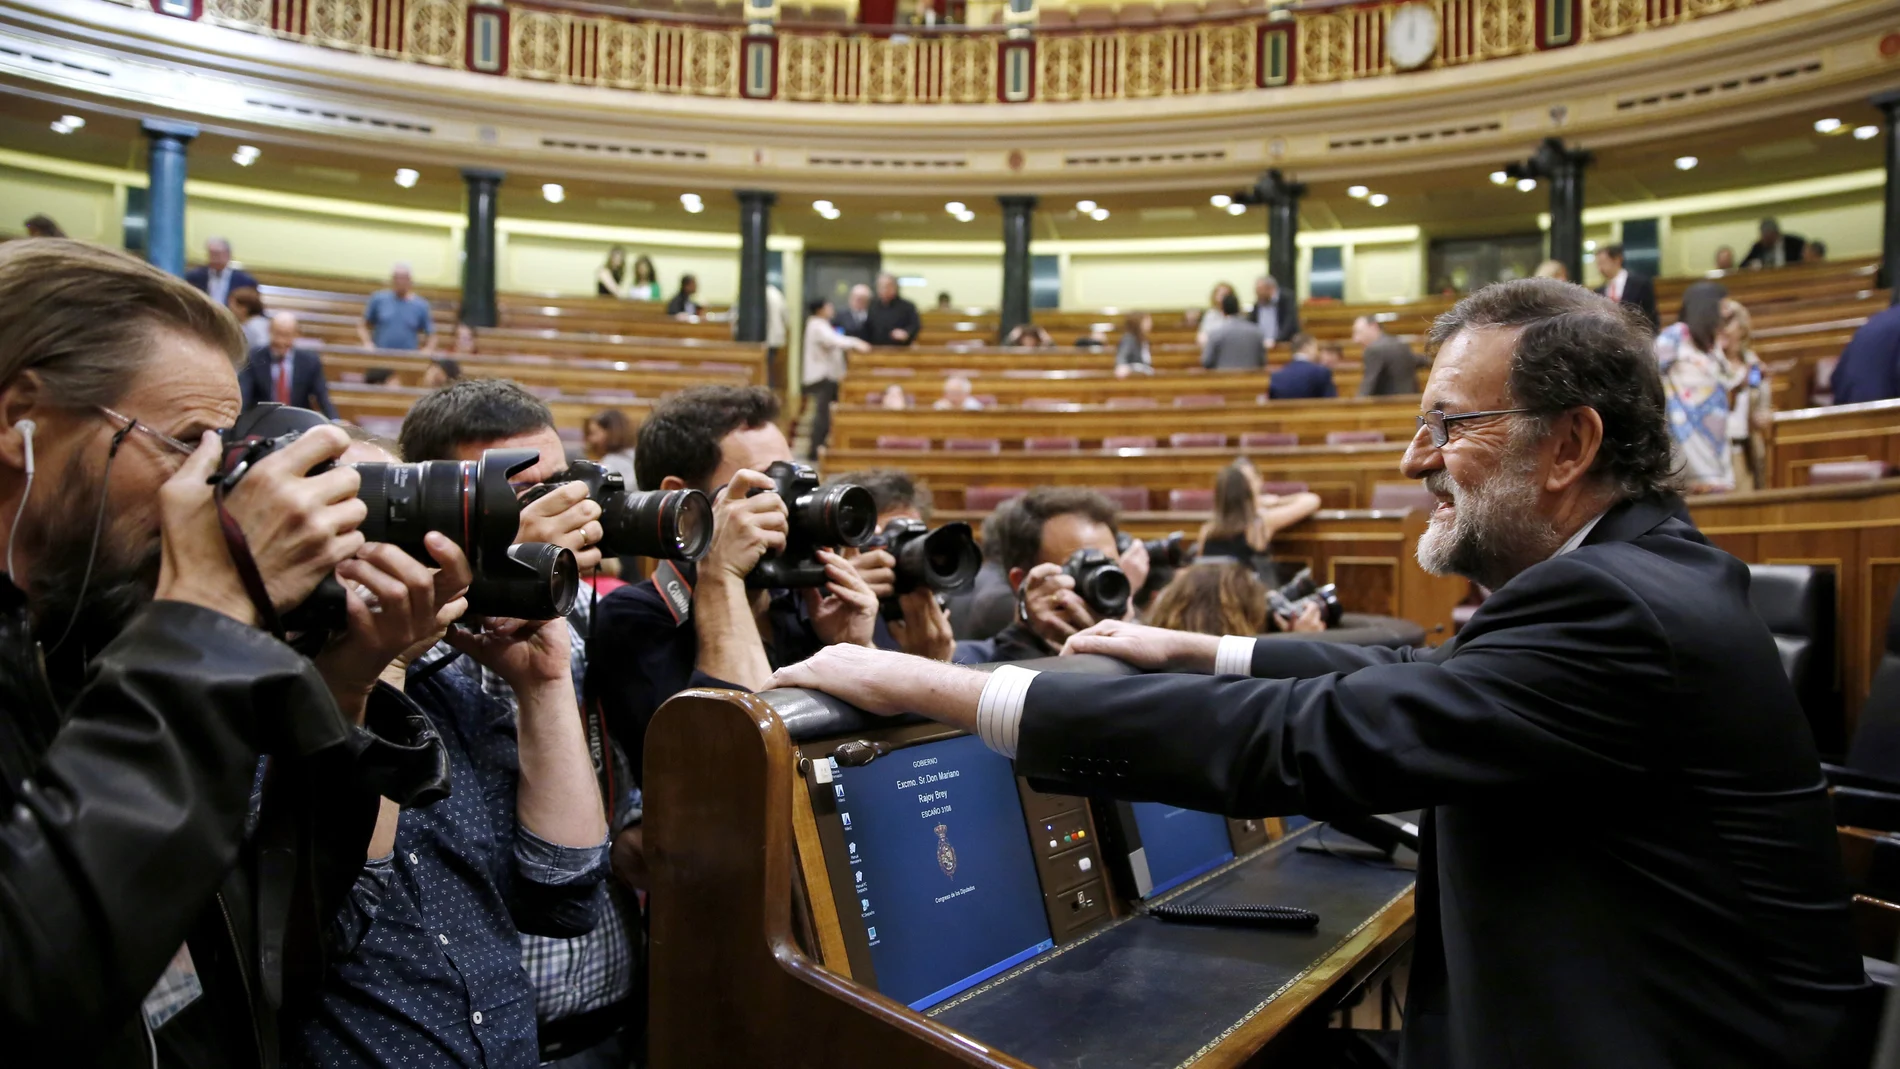 Mariano Rajoy en el Congreso